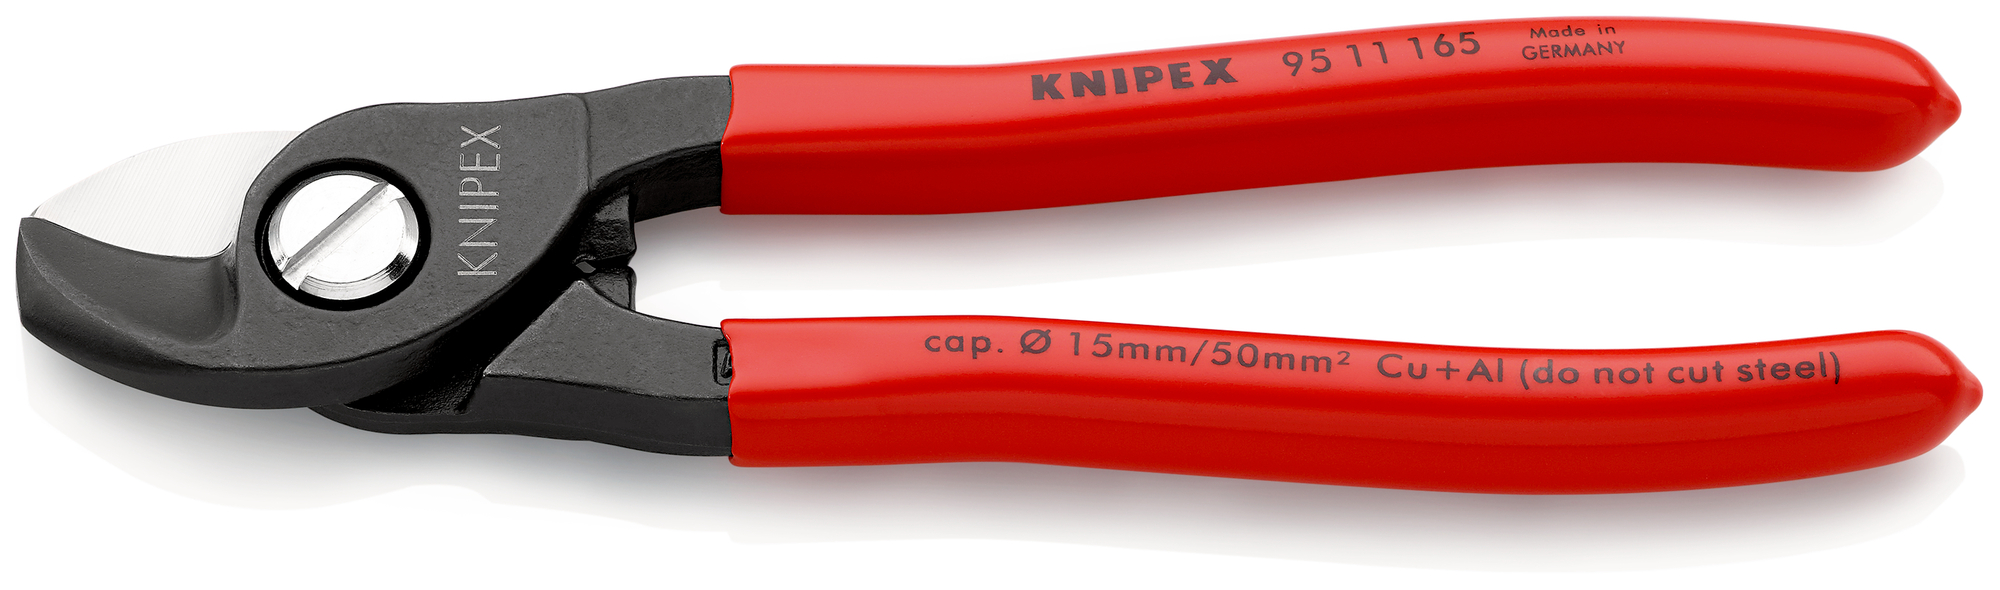 KNIPEX Nožnice káblové 9511165